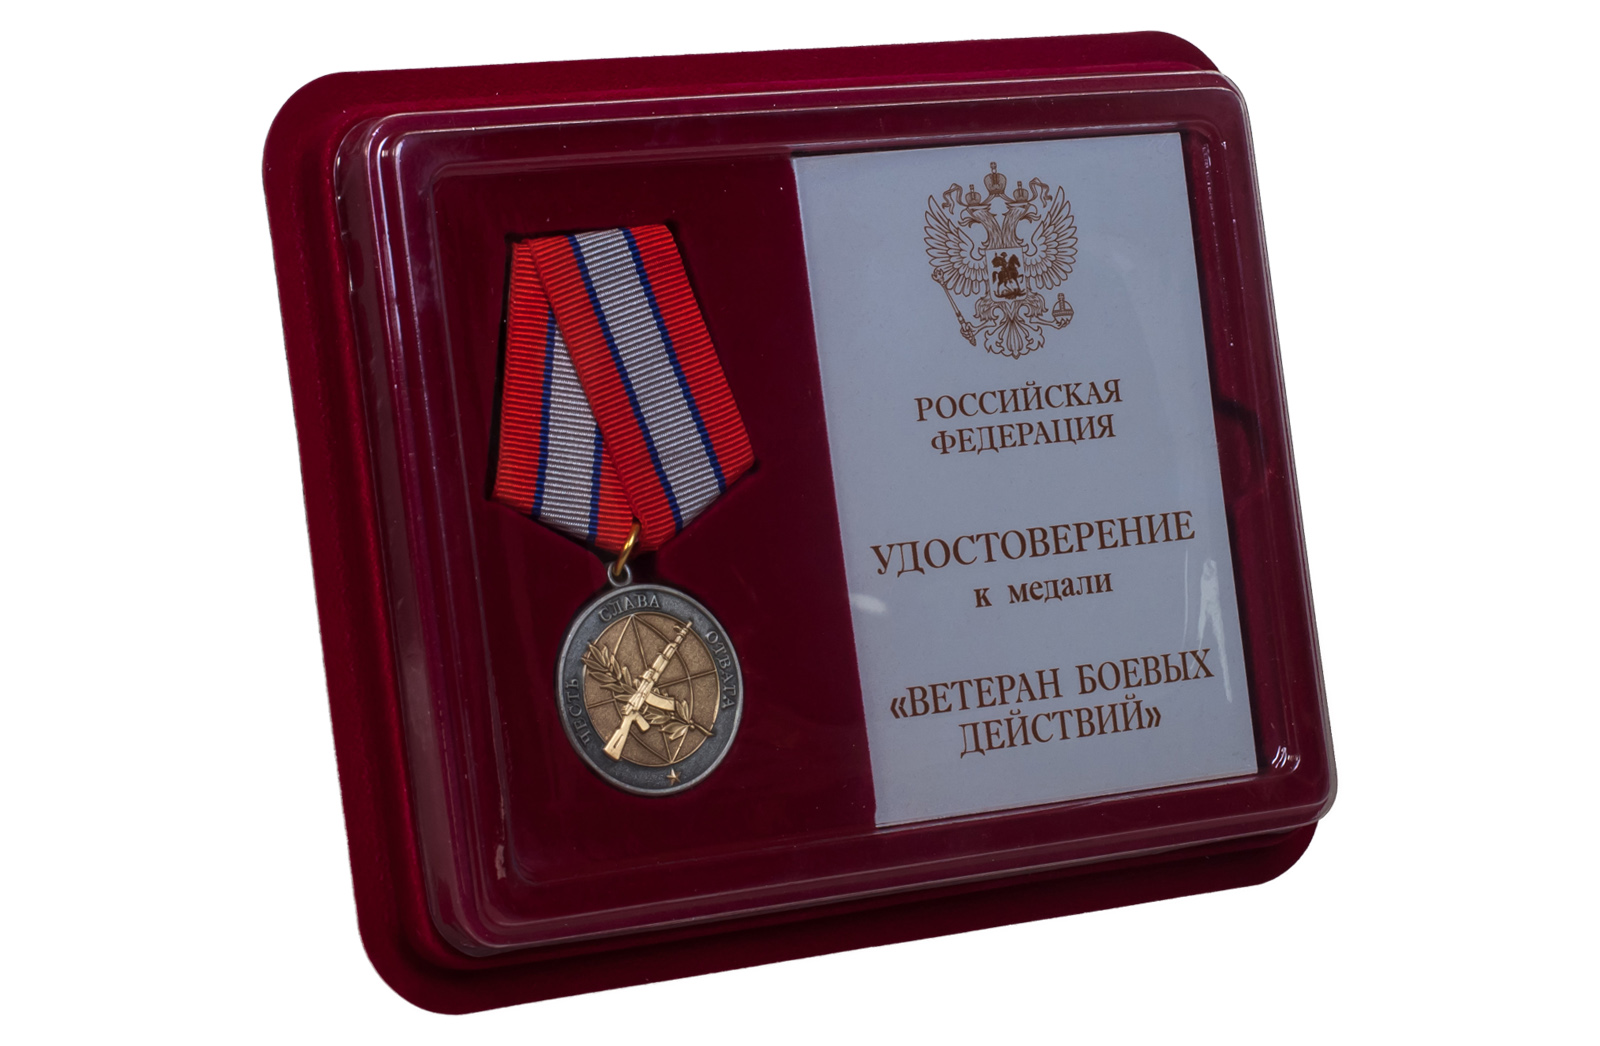 Медаль "Ветеран боевых действий" 